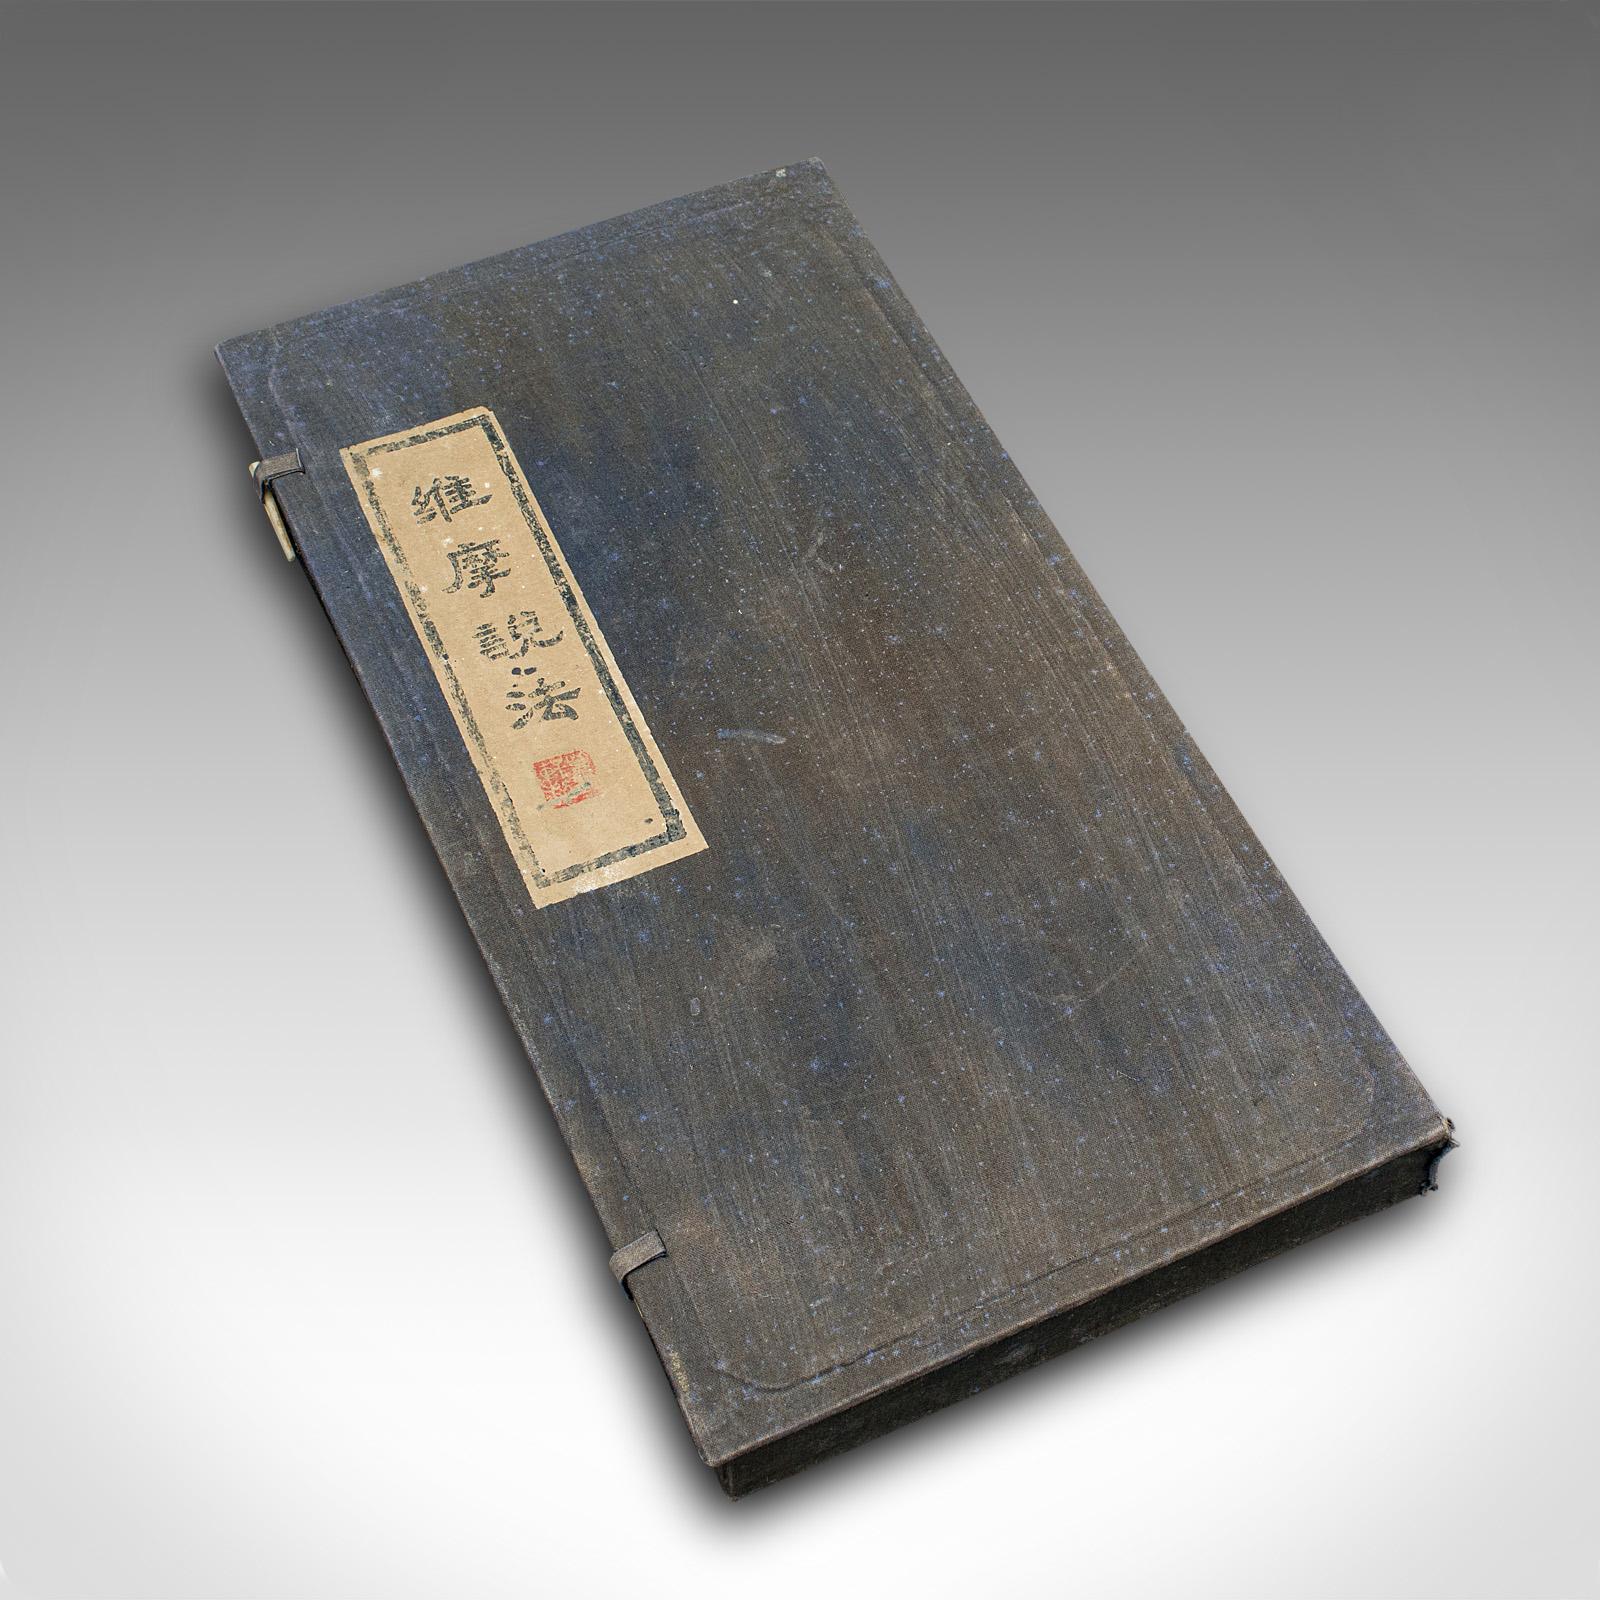 Dies ist ein großer antiker kalligrafischer Tintenblock. Ein chinesischer Rußtinten-Druckstein in einer Schachtel aus der spätviktorianischen Zeit, um 1900.

Hervorragende Proportionen, mit reizvoller künstlerischer Ausstrahlung
Zeigt eine